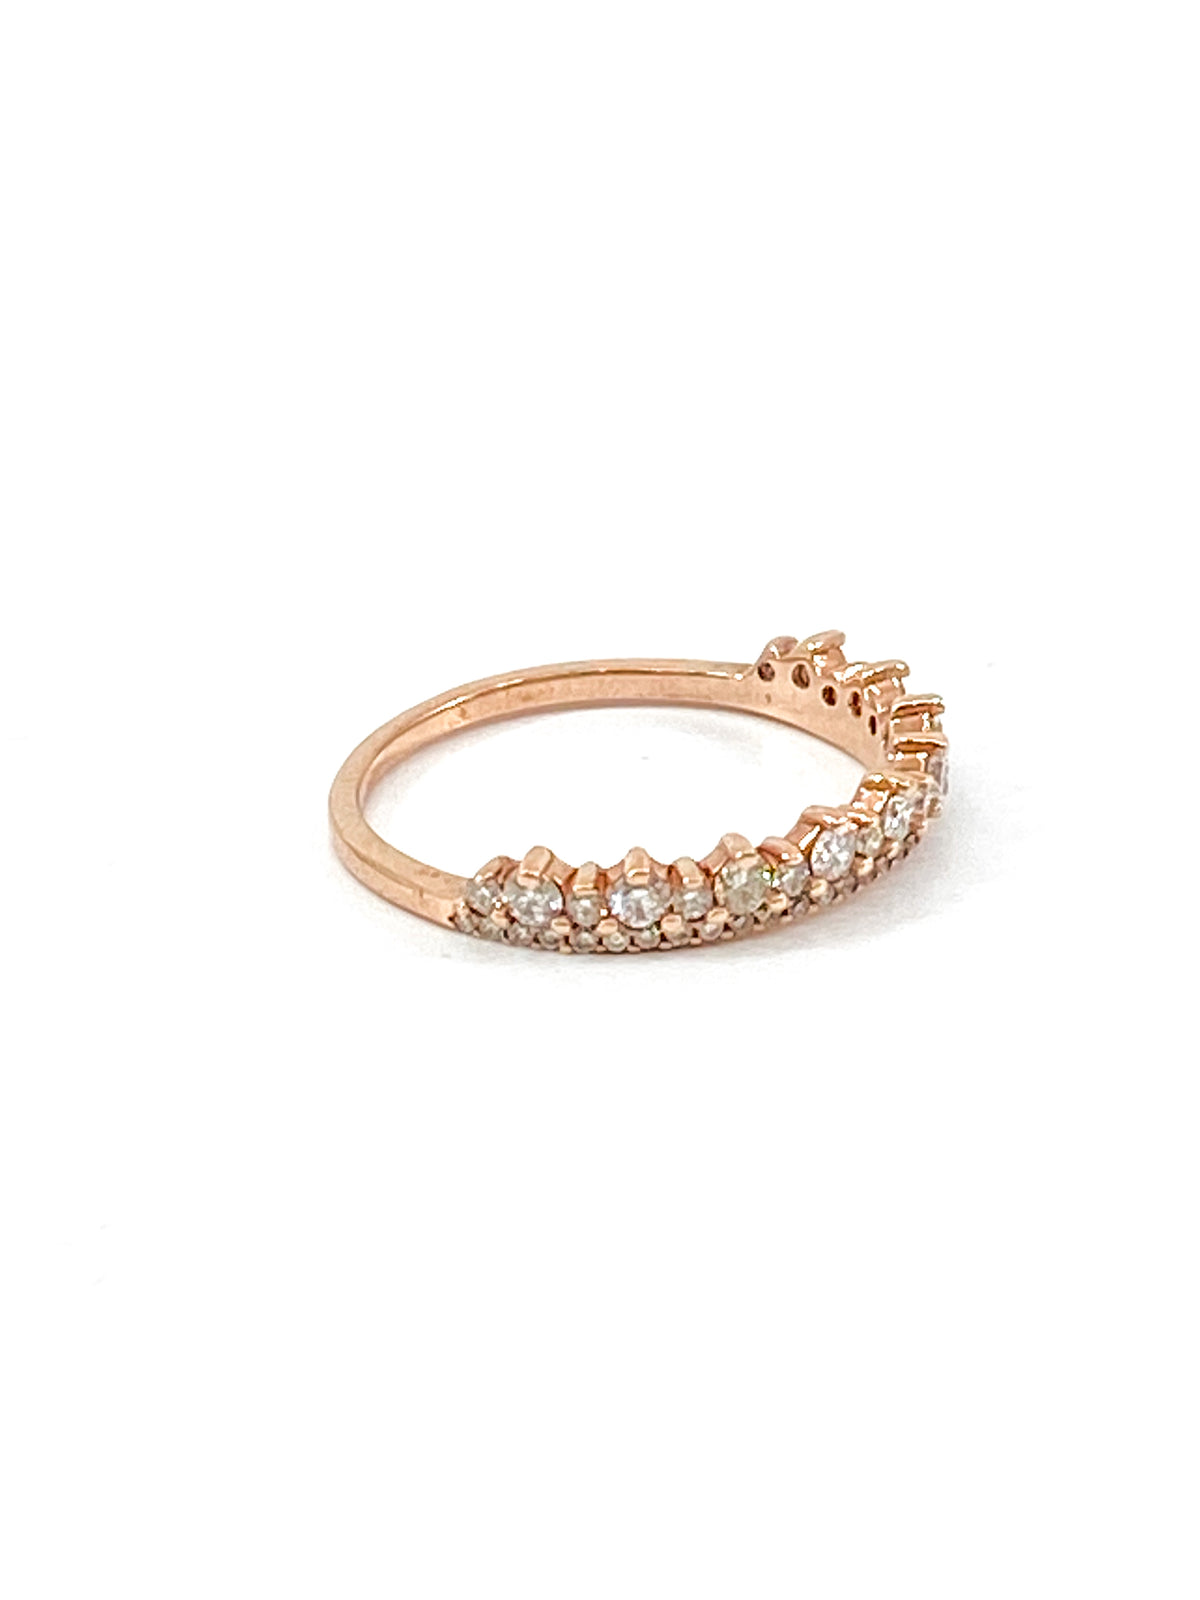 10K Rose Gold 0.50cttw Crown Diamond Ring - Size 6.75